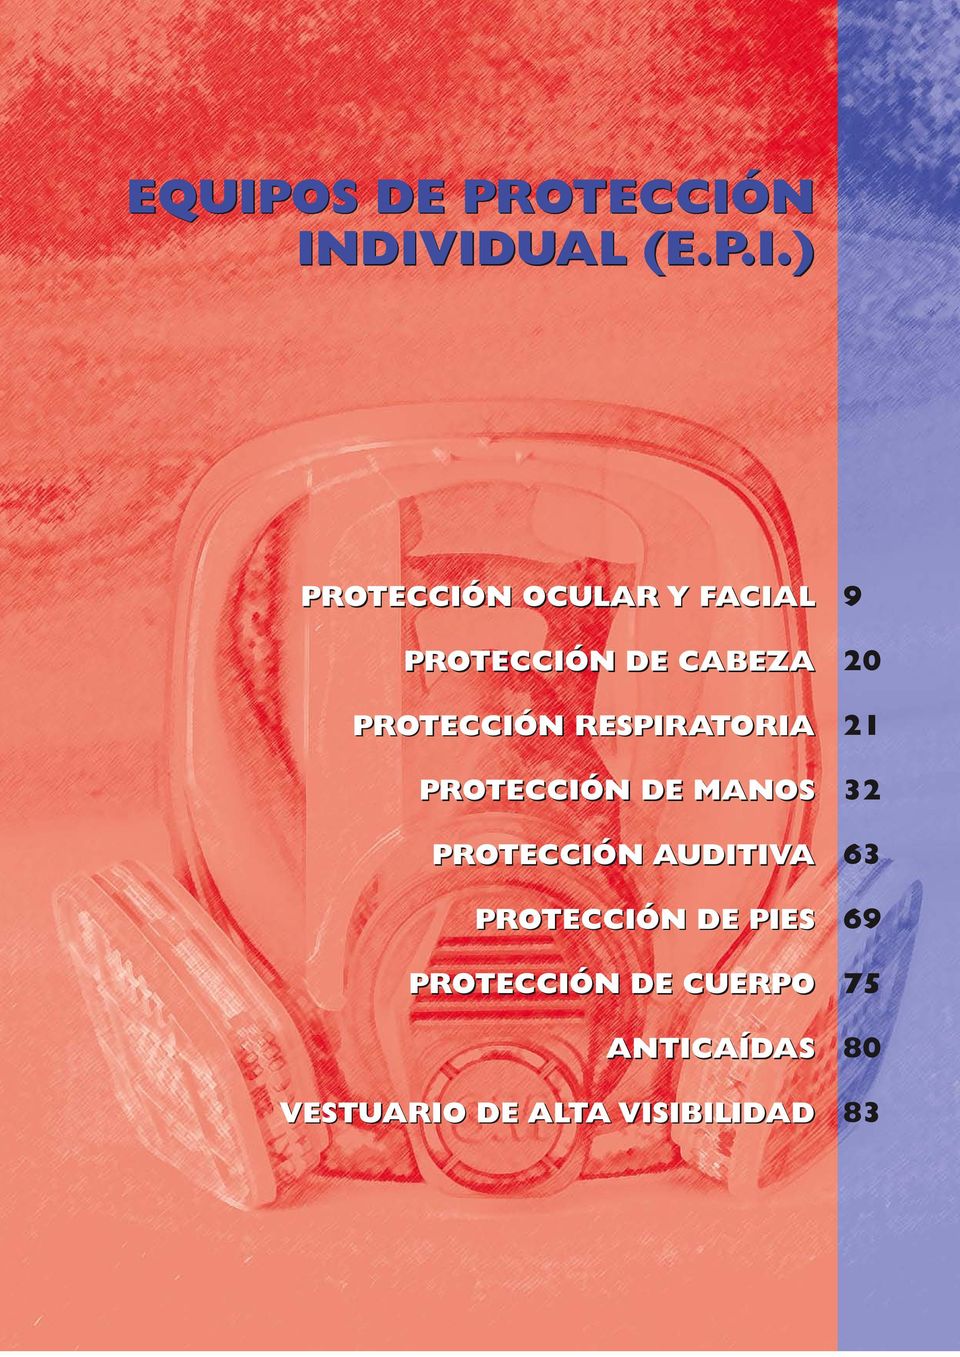 N INDIVIDUAL (E.P.I.) PROTECCIÓN DE CABEZA PROTECCIÓN